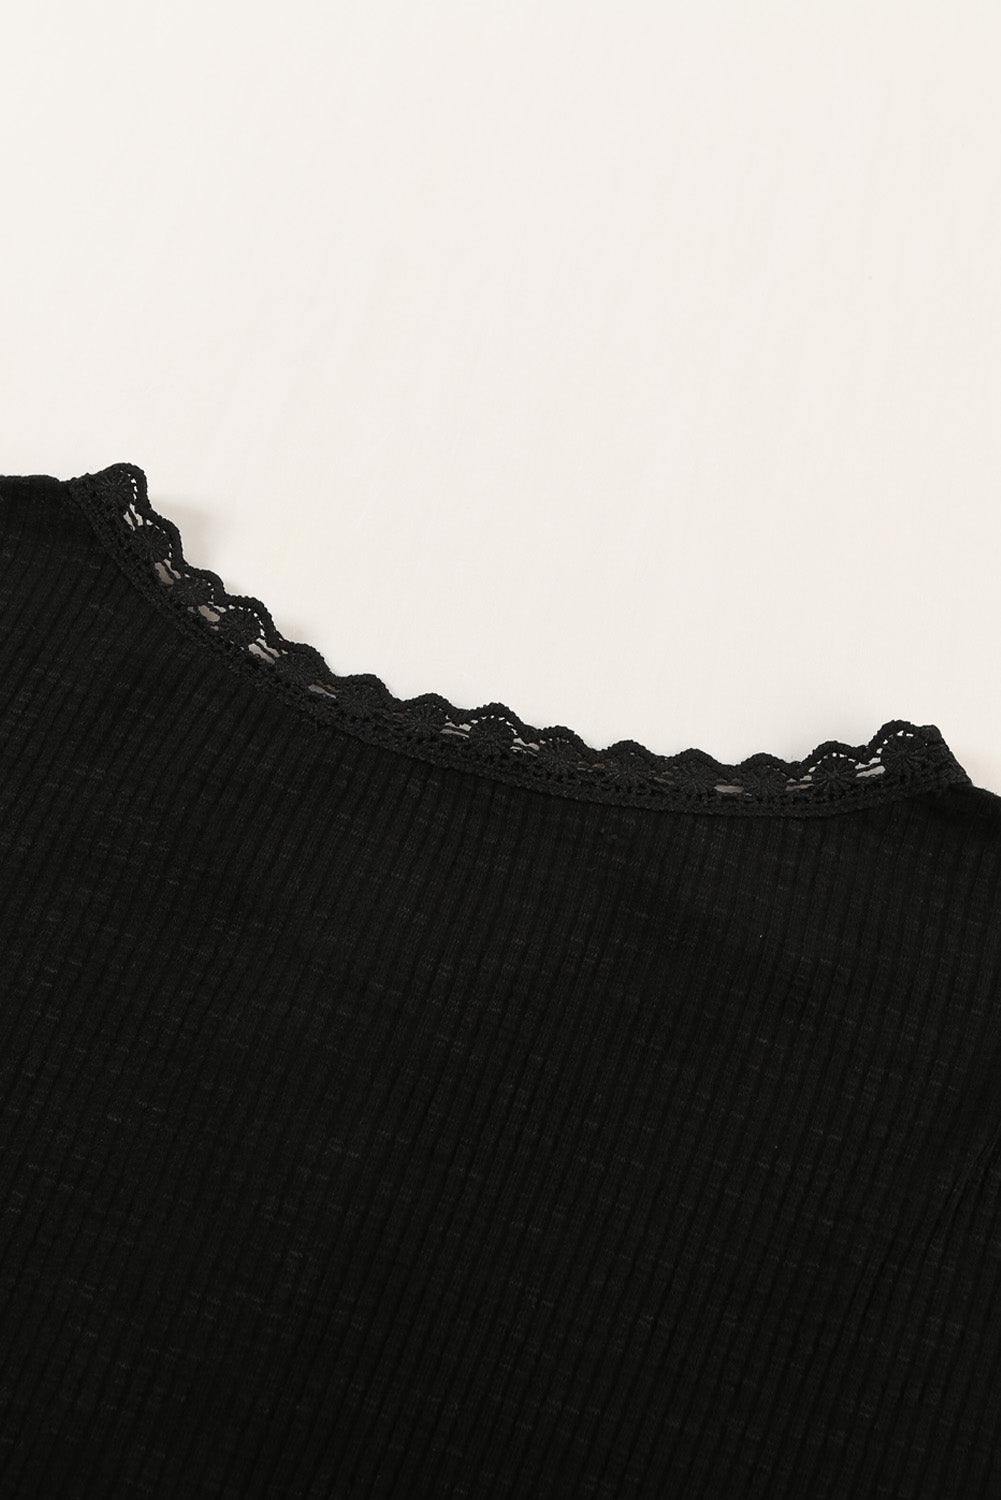 Črna rebrasta pletena majica s kratkimi rokavi in ​​gumbi